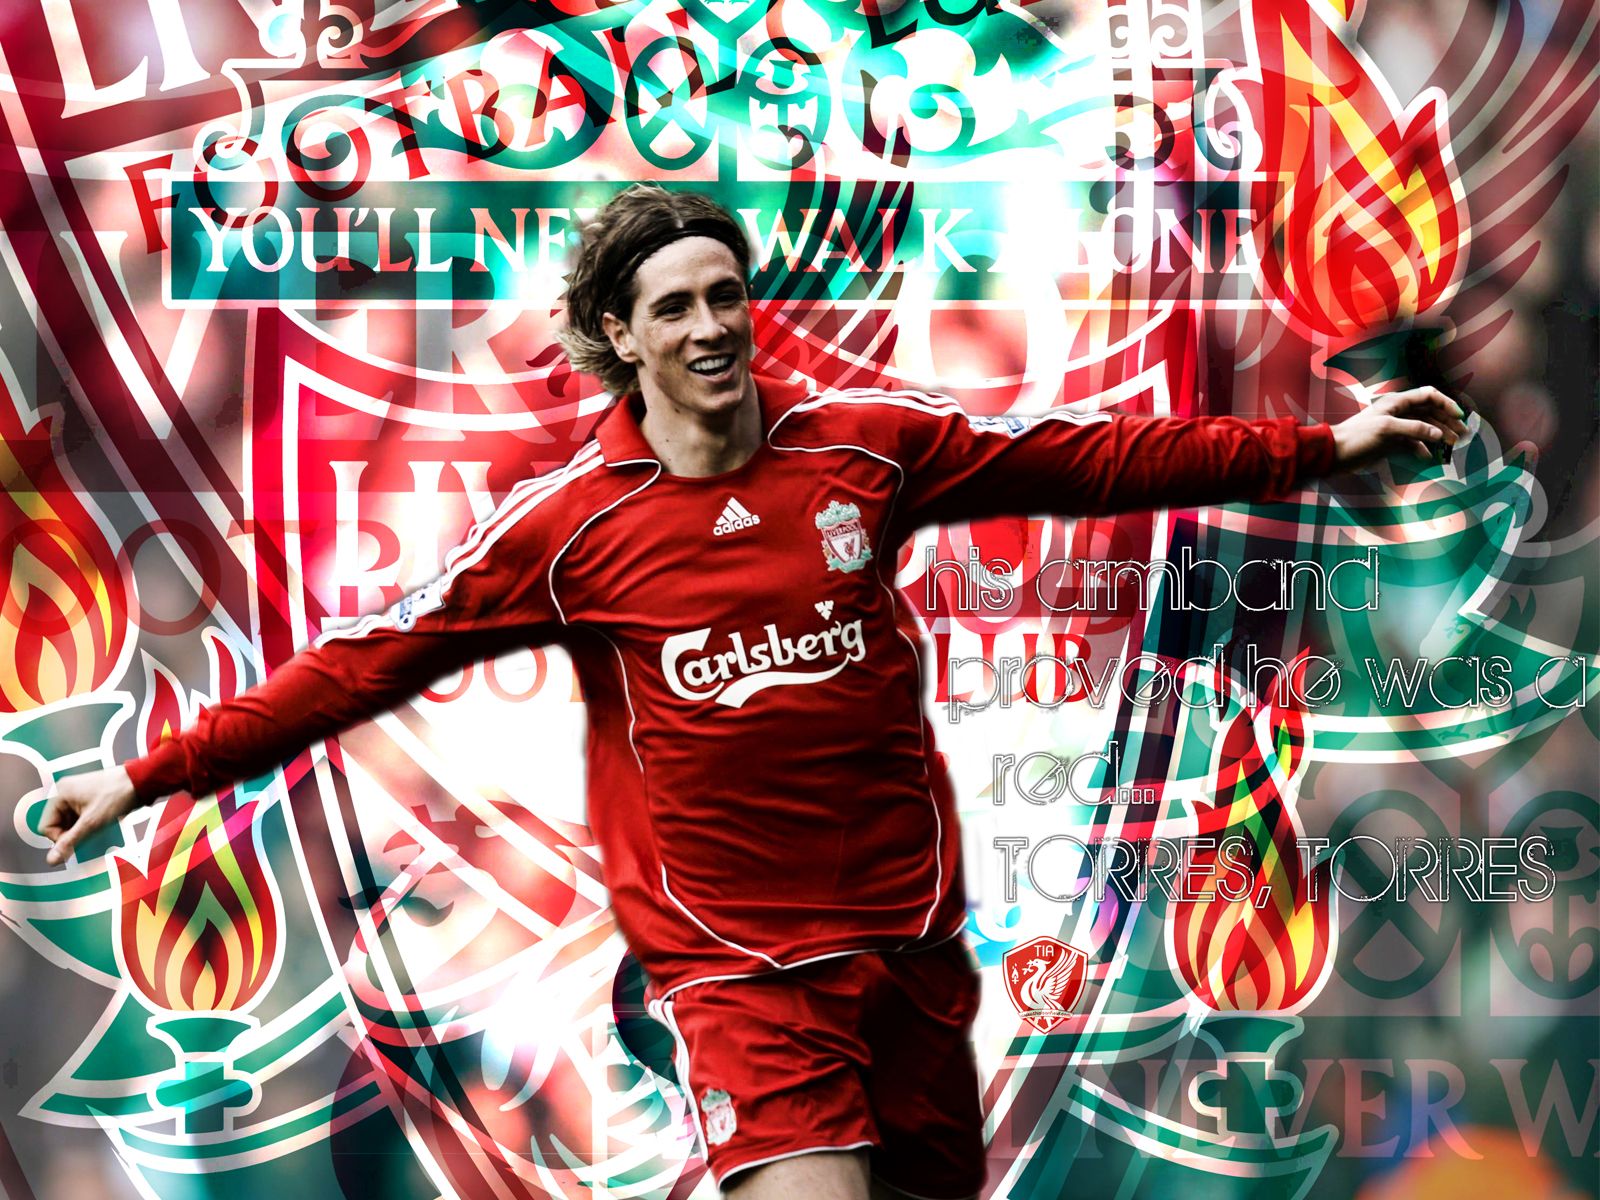 Fernando Torres Liverpool Wallpaper Viewallpaper.com